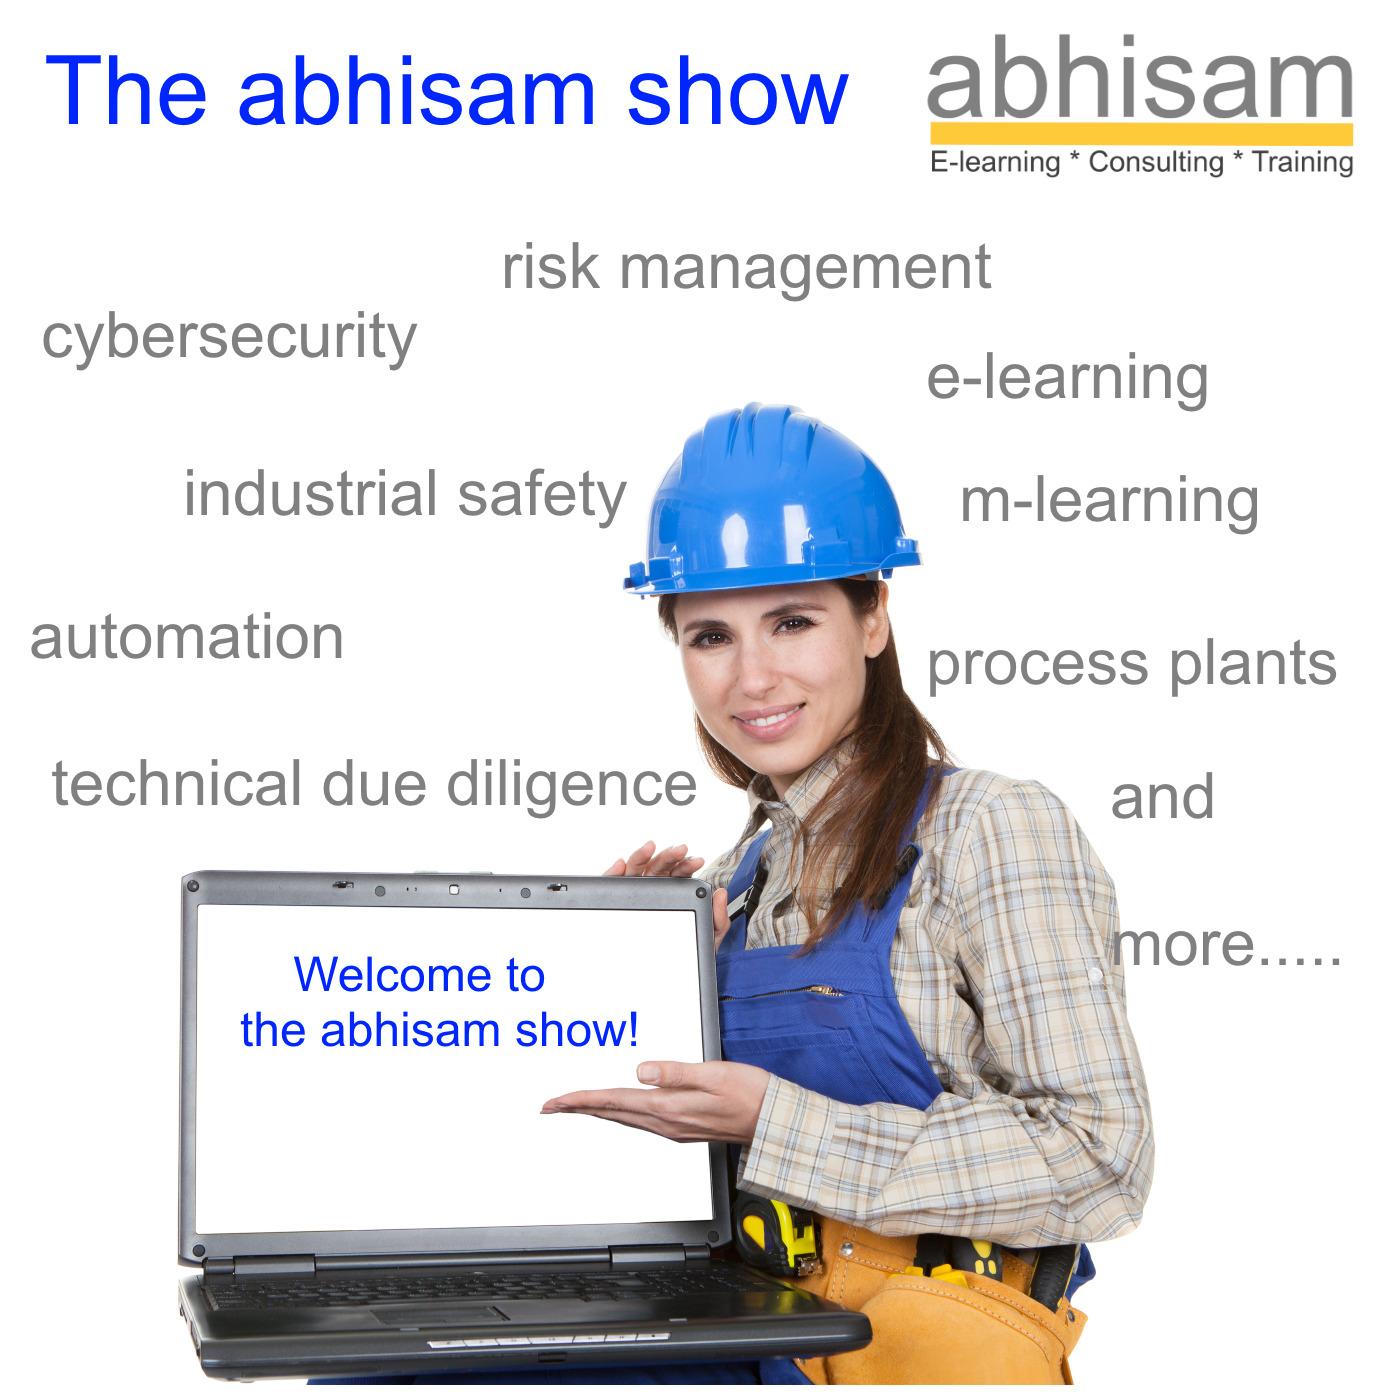 The Abhisam Show